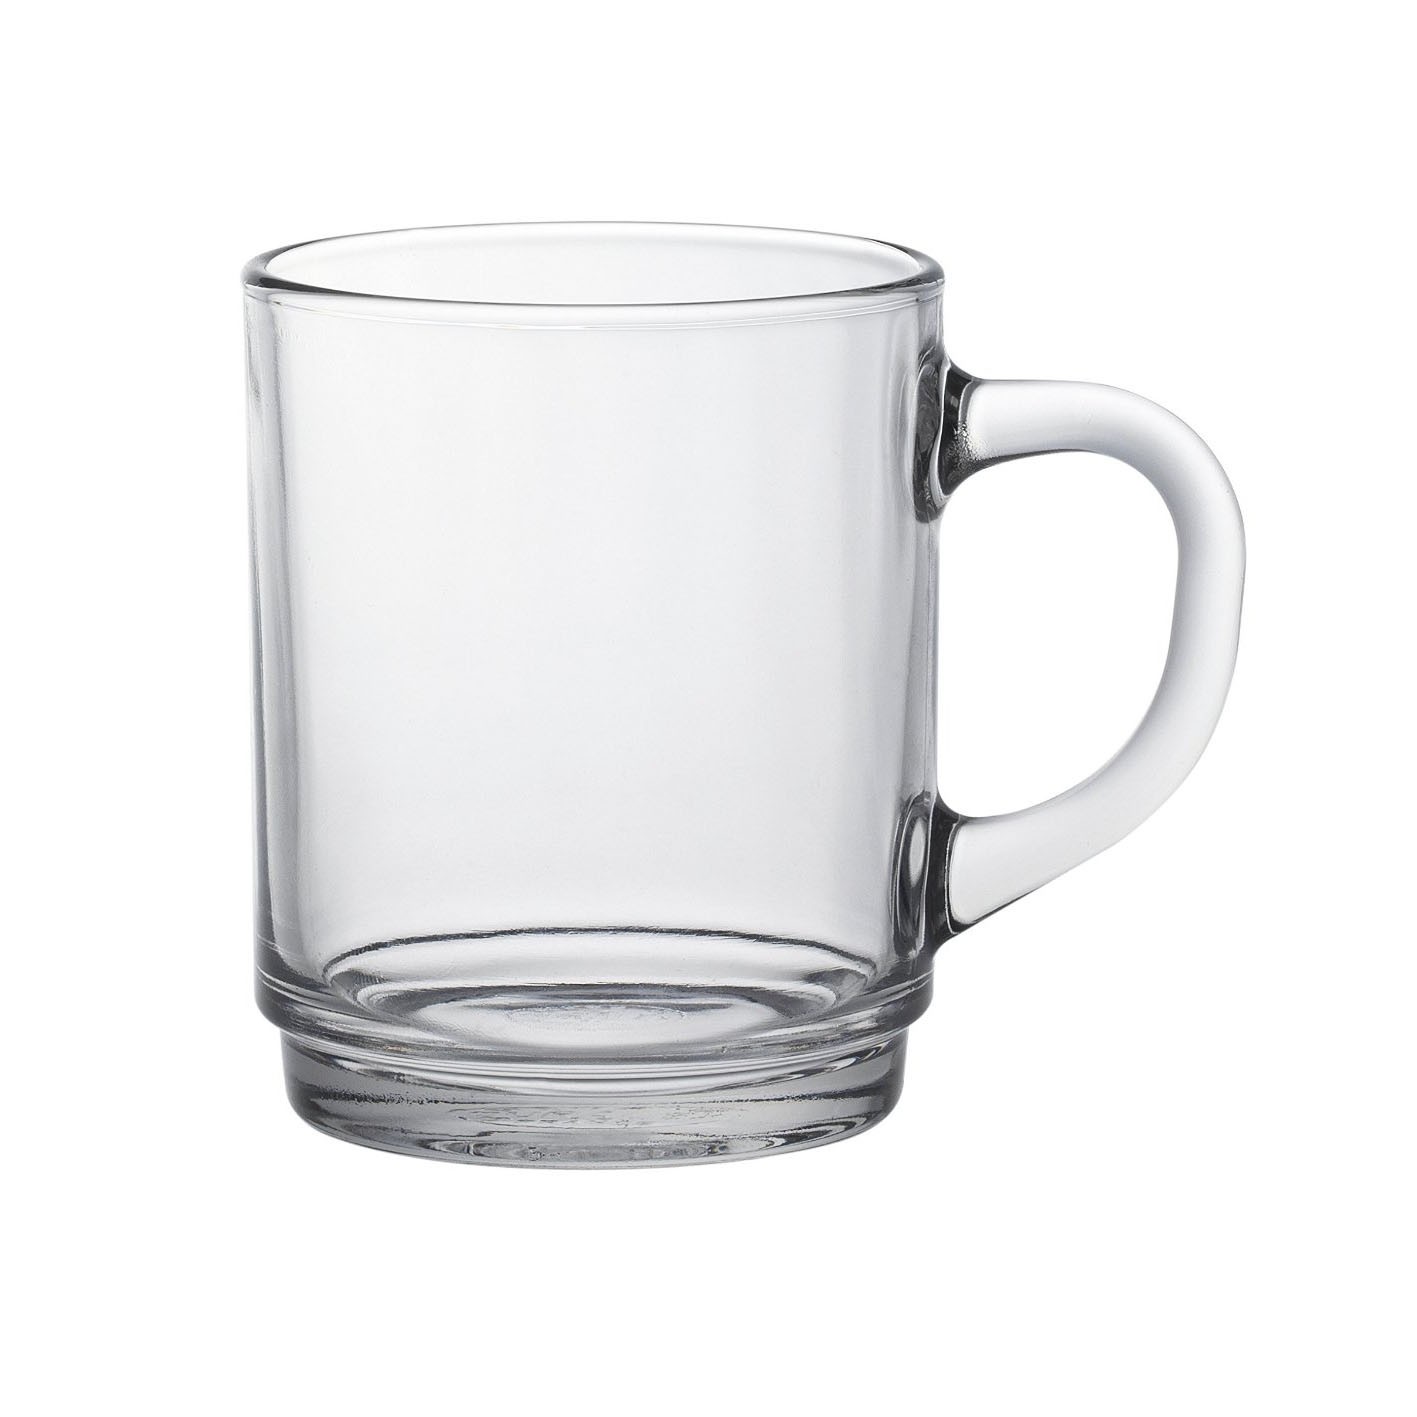 Tasse à déjeuner / Mug 26cl en verre transparent - Lot de 6